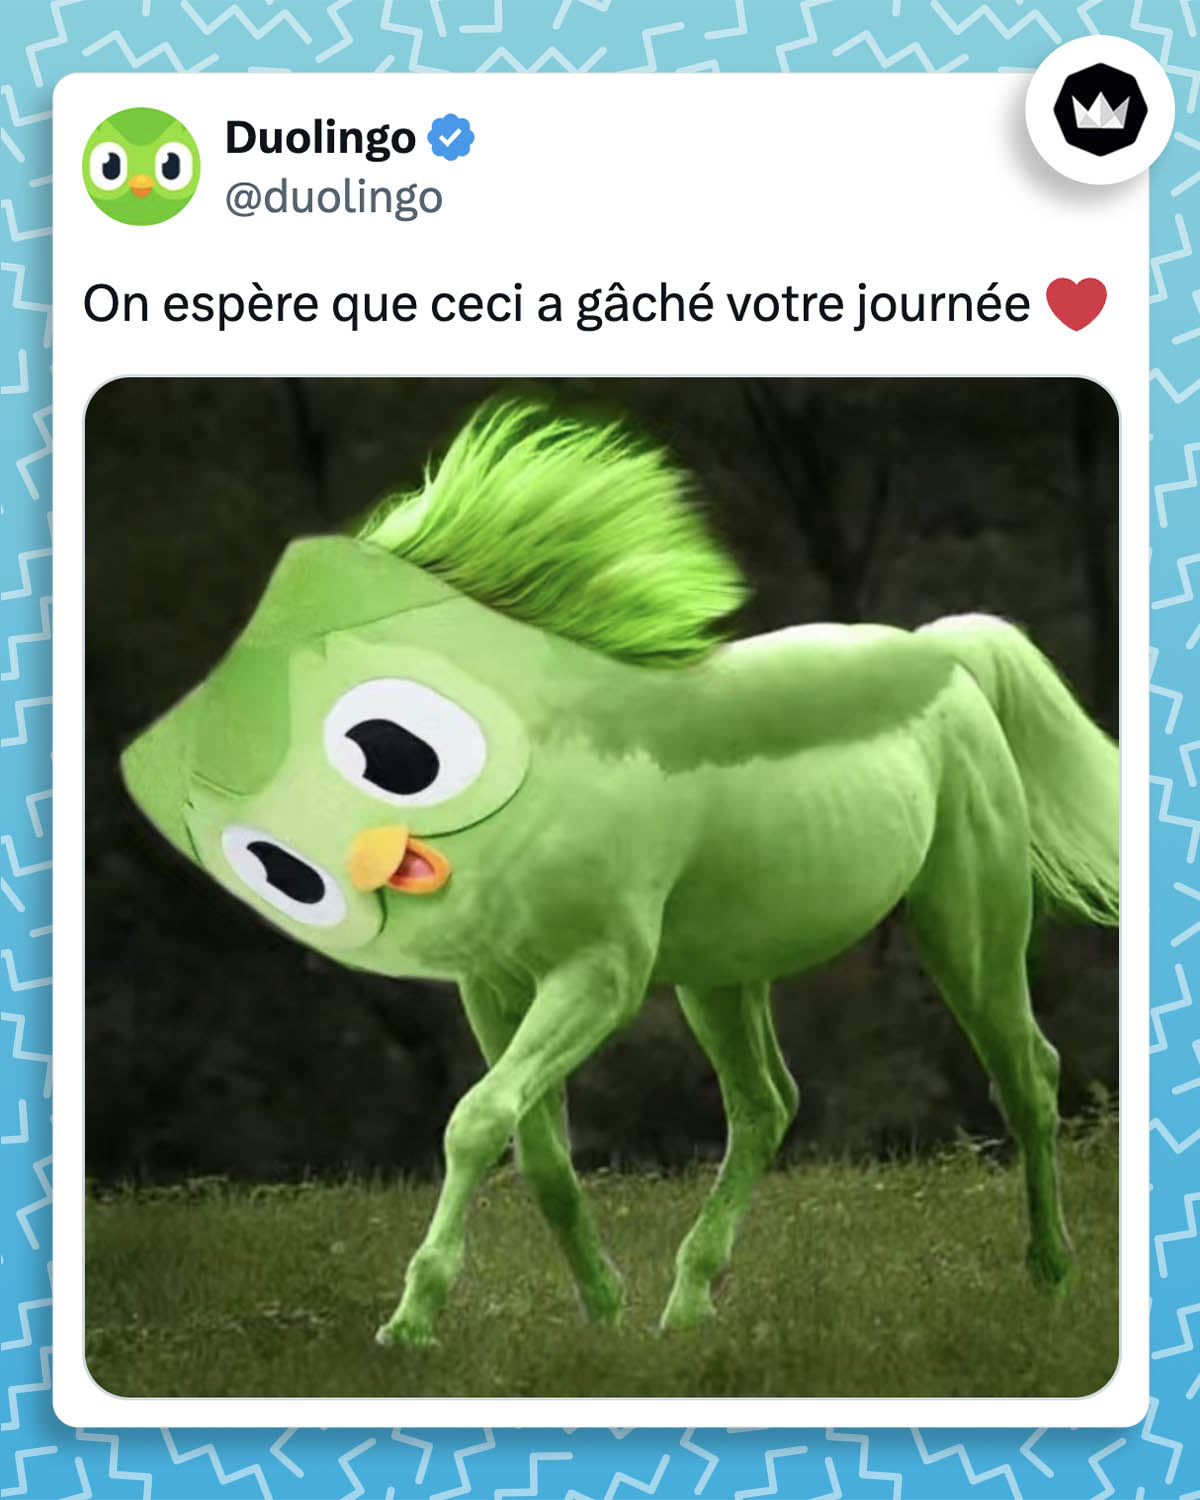 Duolingo : "On espère que ceci a gâché votre journée" Montage d'un cheval bleu surmonté de la tête de la mascotte de Duolingo